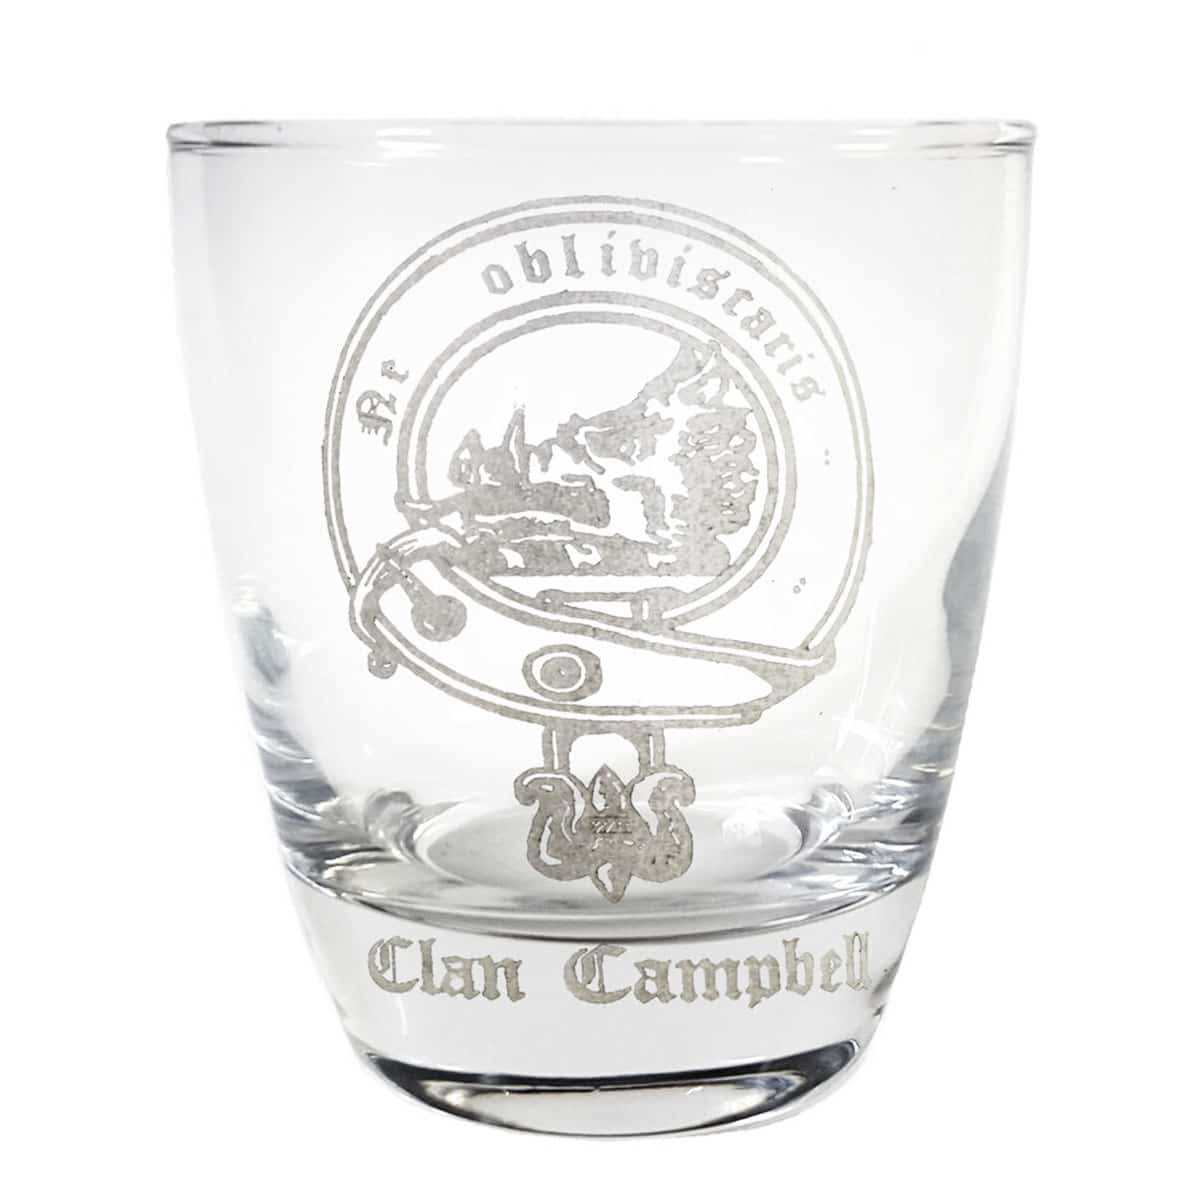 Irish Pewter Celtic Whiskey Glasses - Set of 2